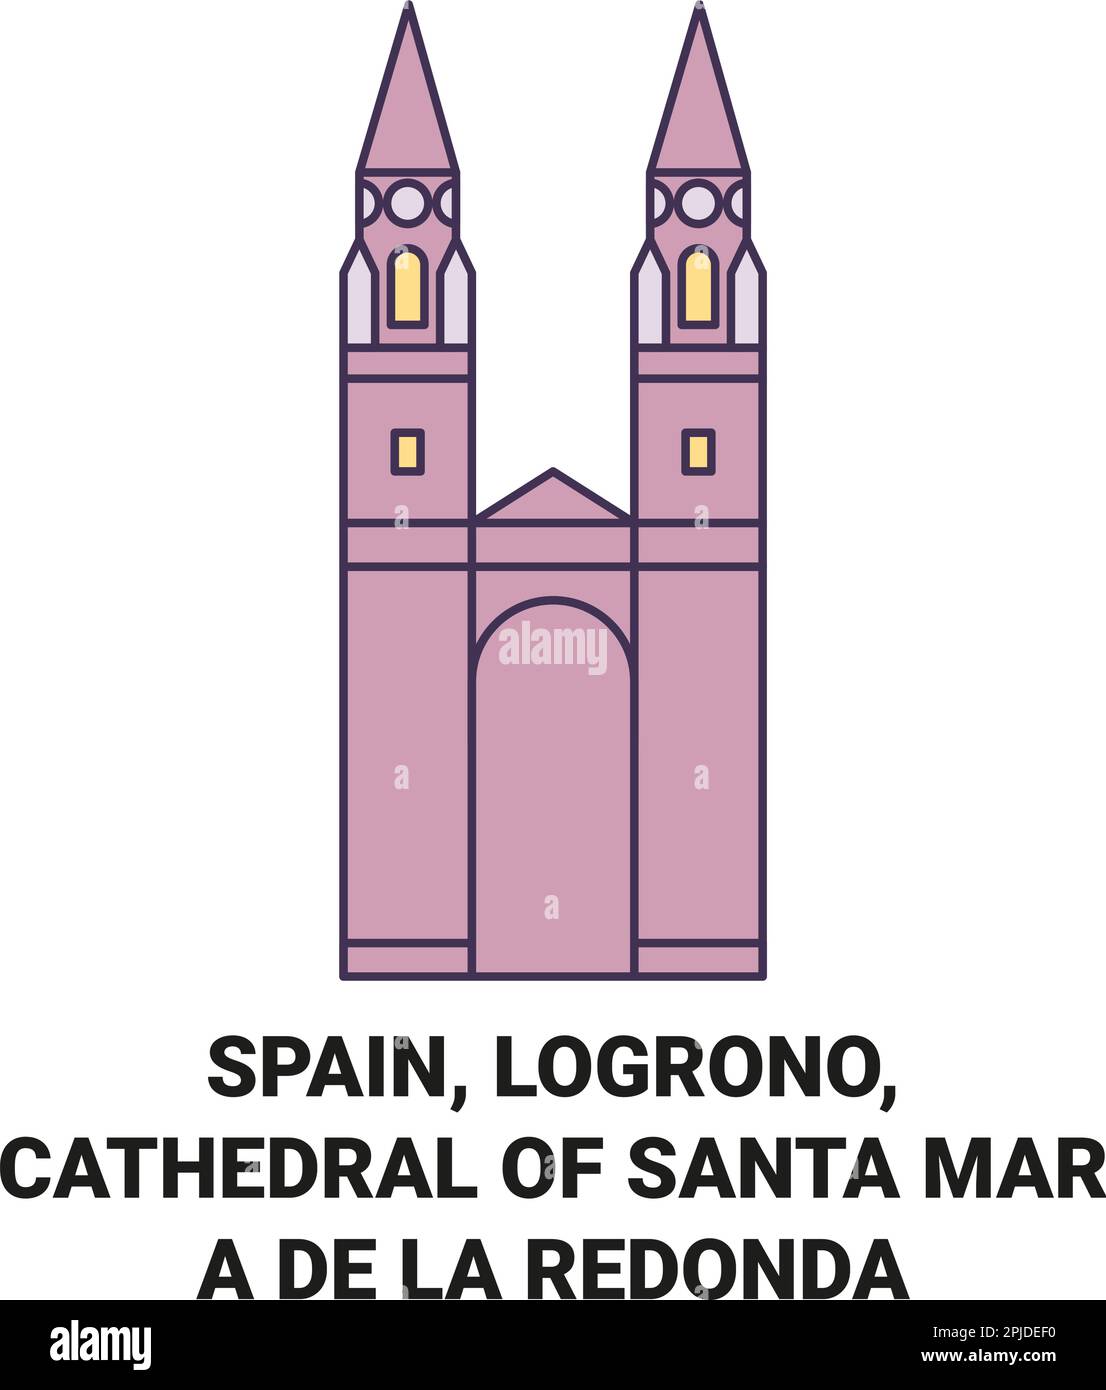 Espagne, Logrono, Cathédrale de Santa Mara de la Retonda Voyage repère illustration vecteur Illustration de Vecteur